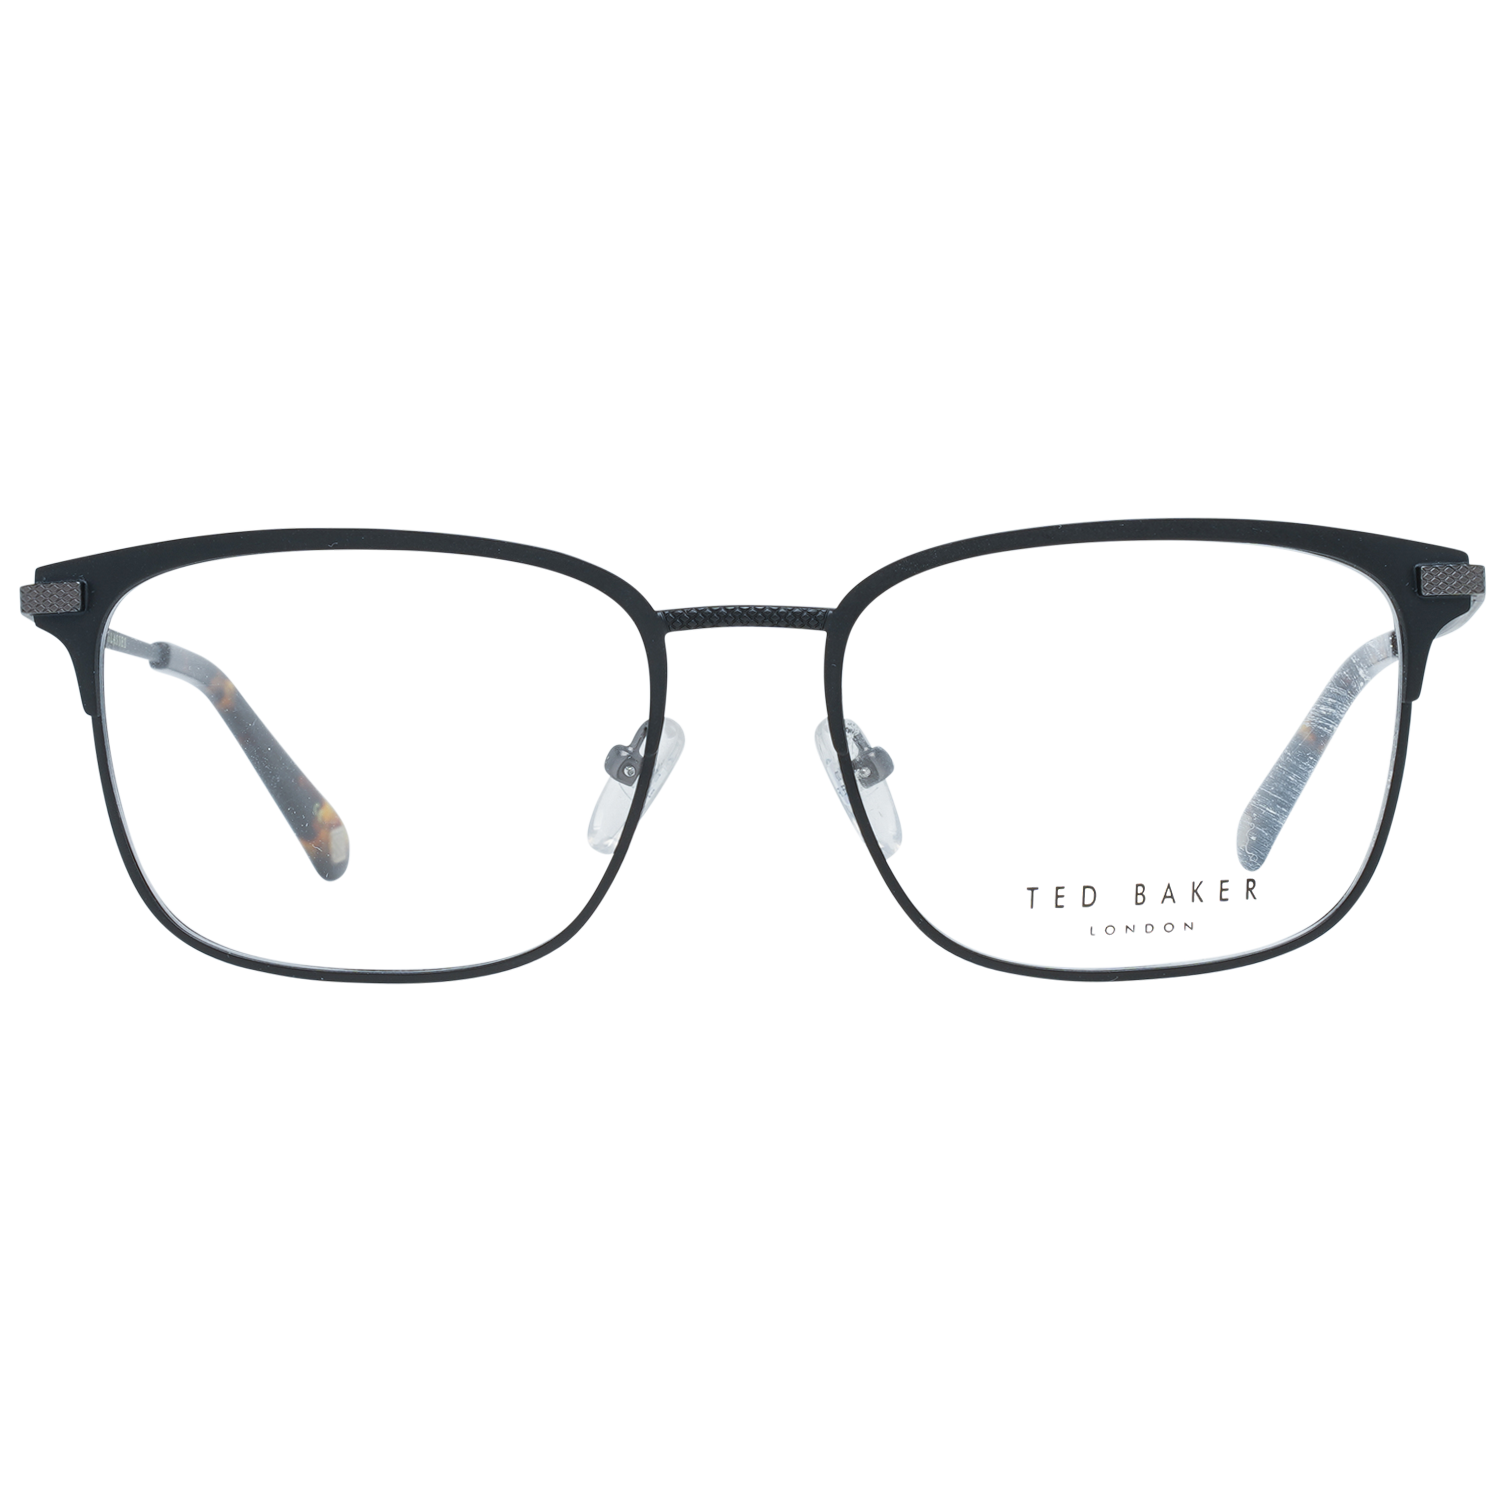 Ted Baker Frames Ted Baker Optical Frame Prescription Glasses TB4259 001 54 Daley Eyeglasses Eyewear UK USA Australia 